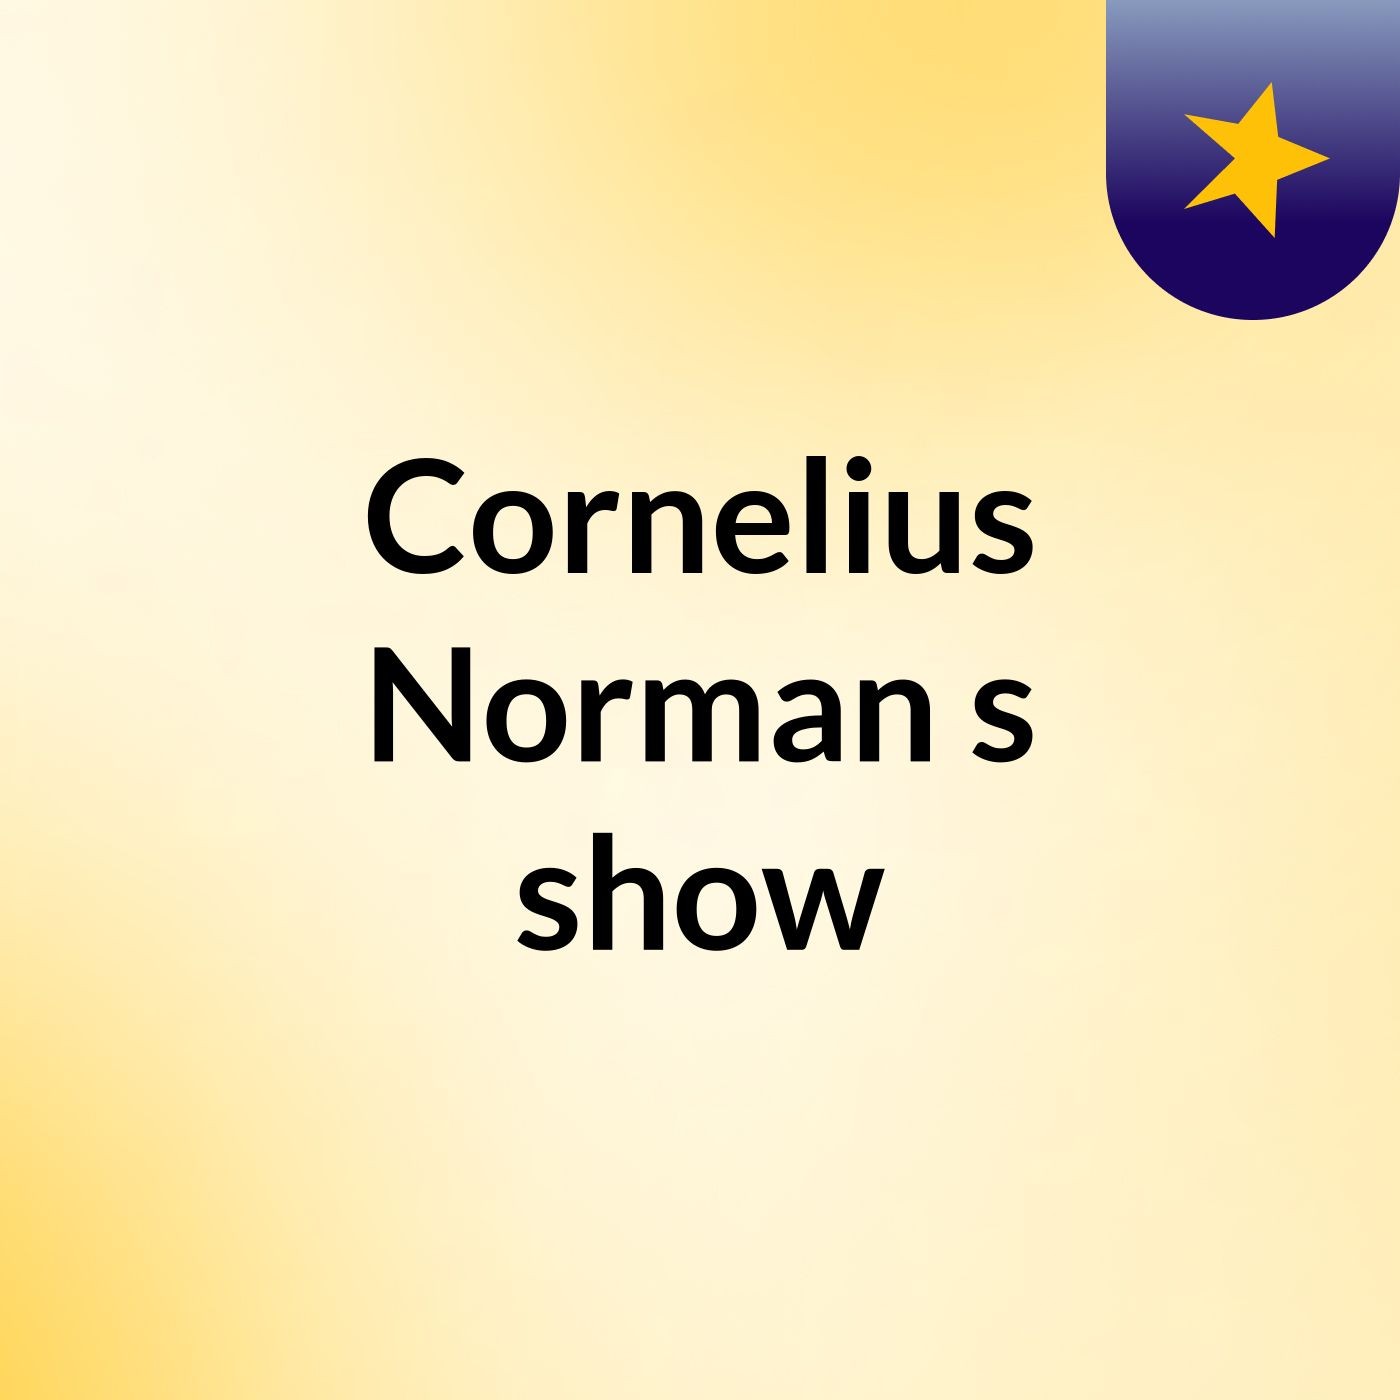 Cornelius Norman's show